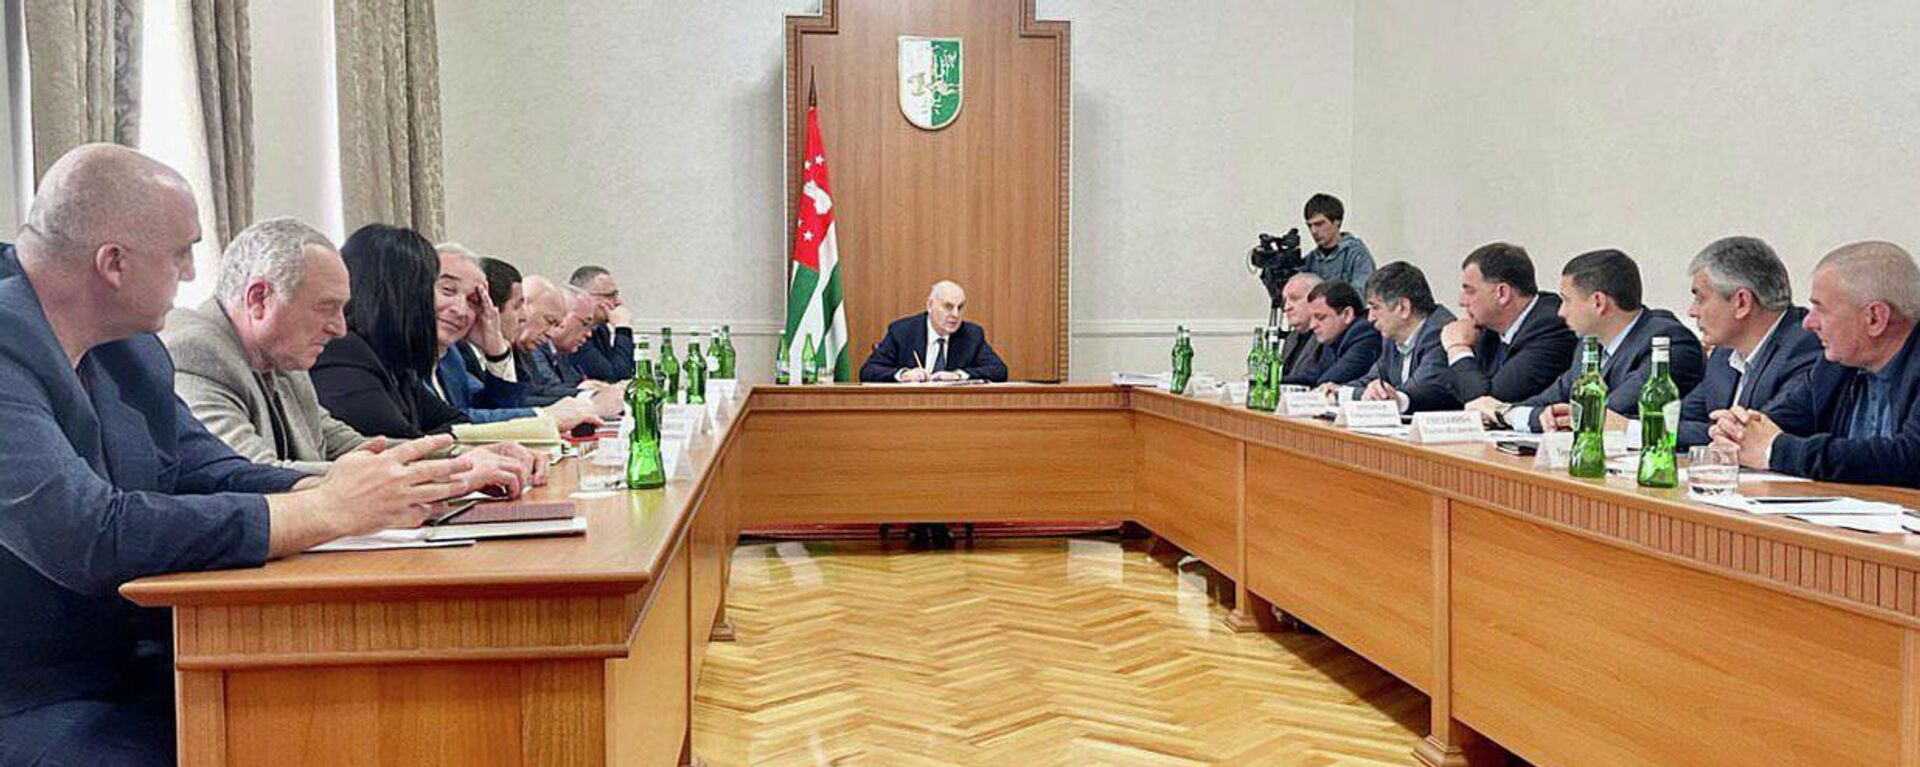 Президент Абхазии Аслан Бжания провел рабочее совещание по вопросам энергетики и незаконной добычи криптовалют  - Sputnik Аҧсны, 1920, 12.05.2022